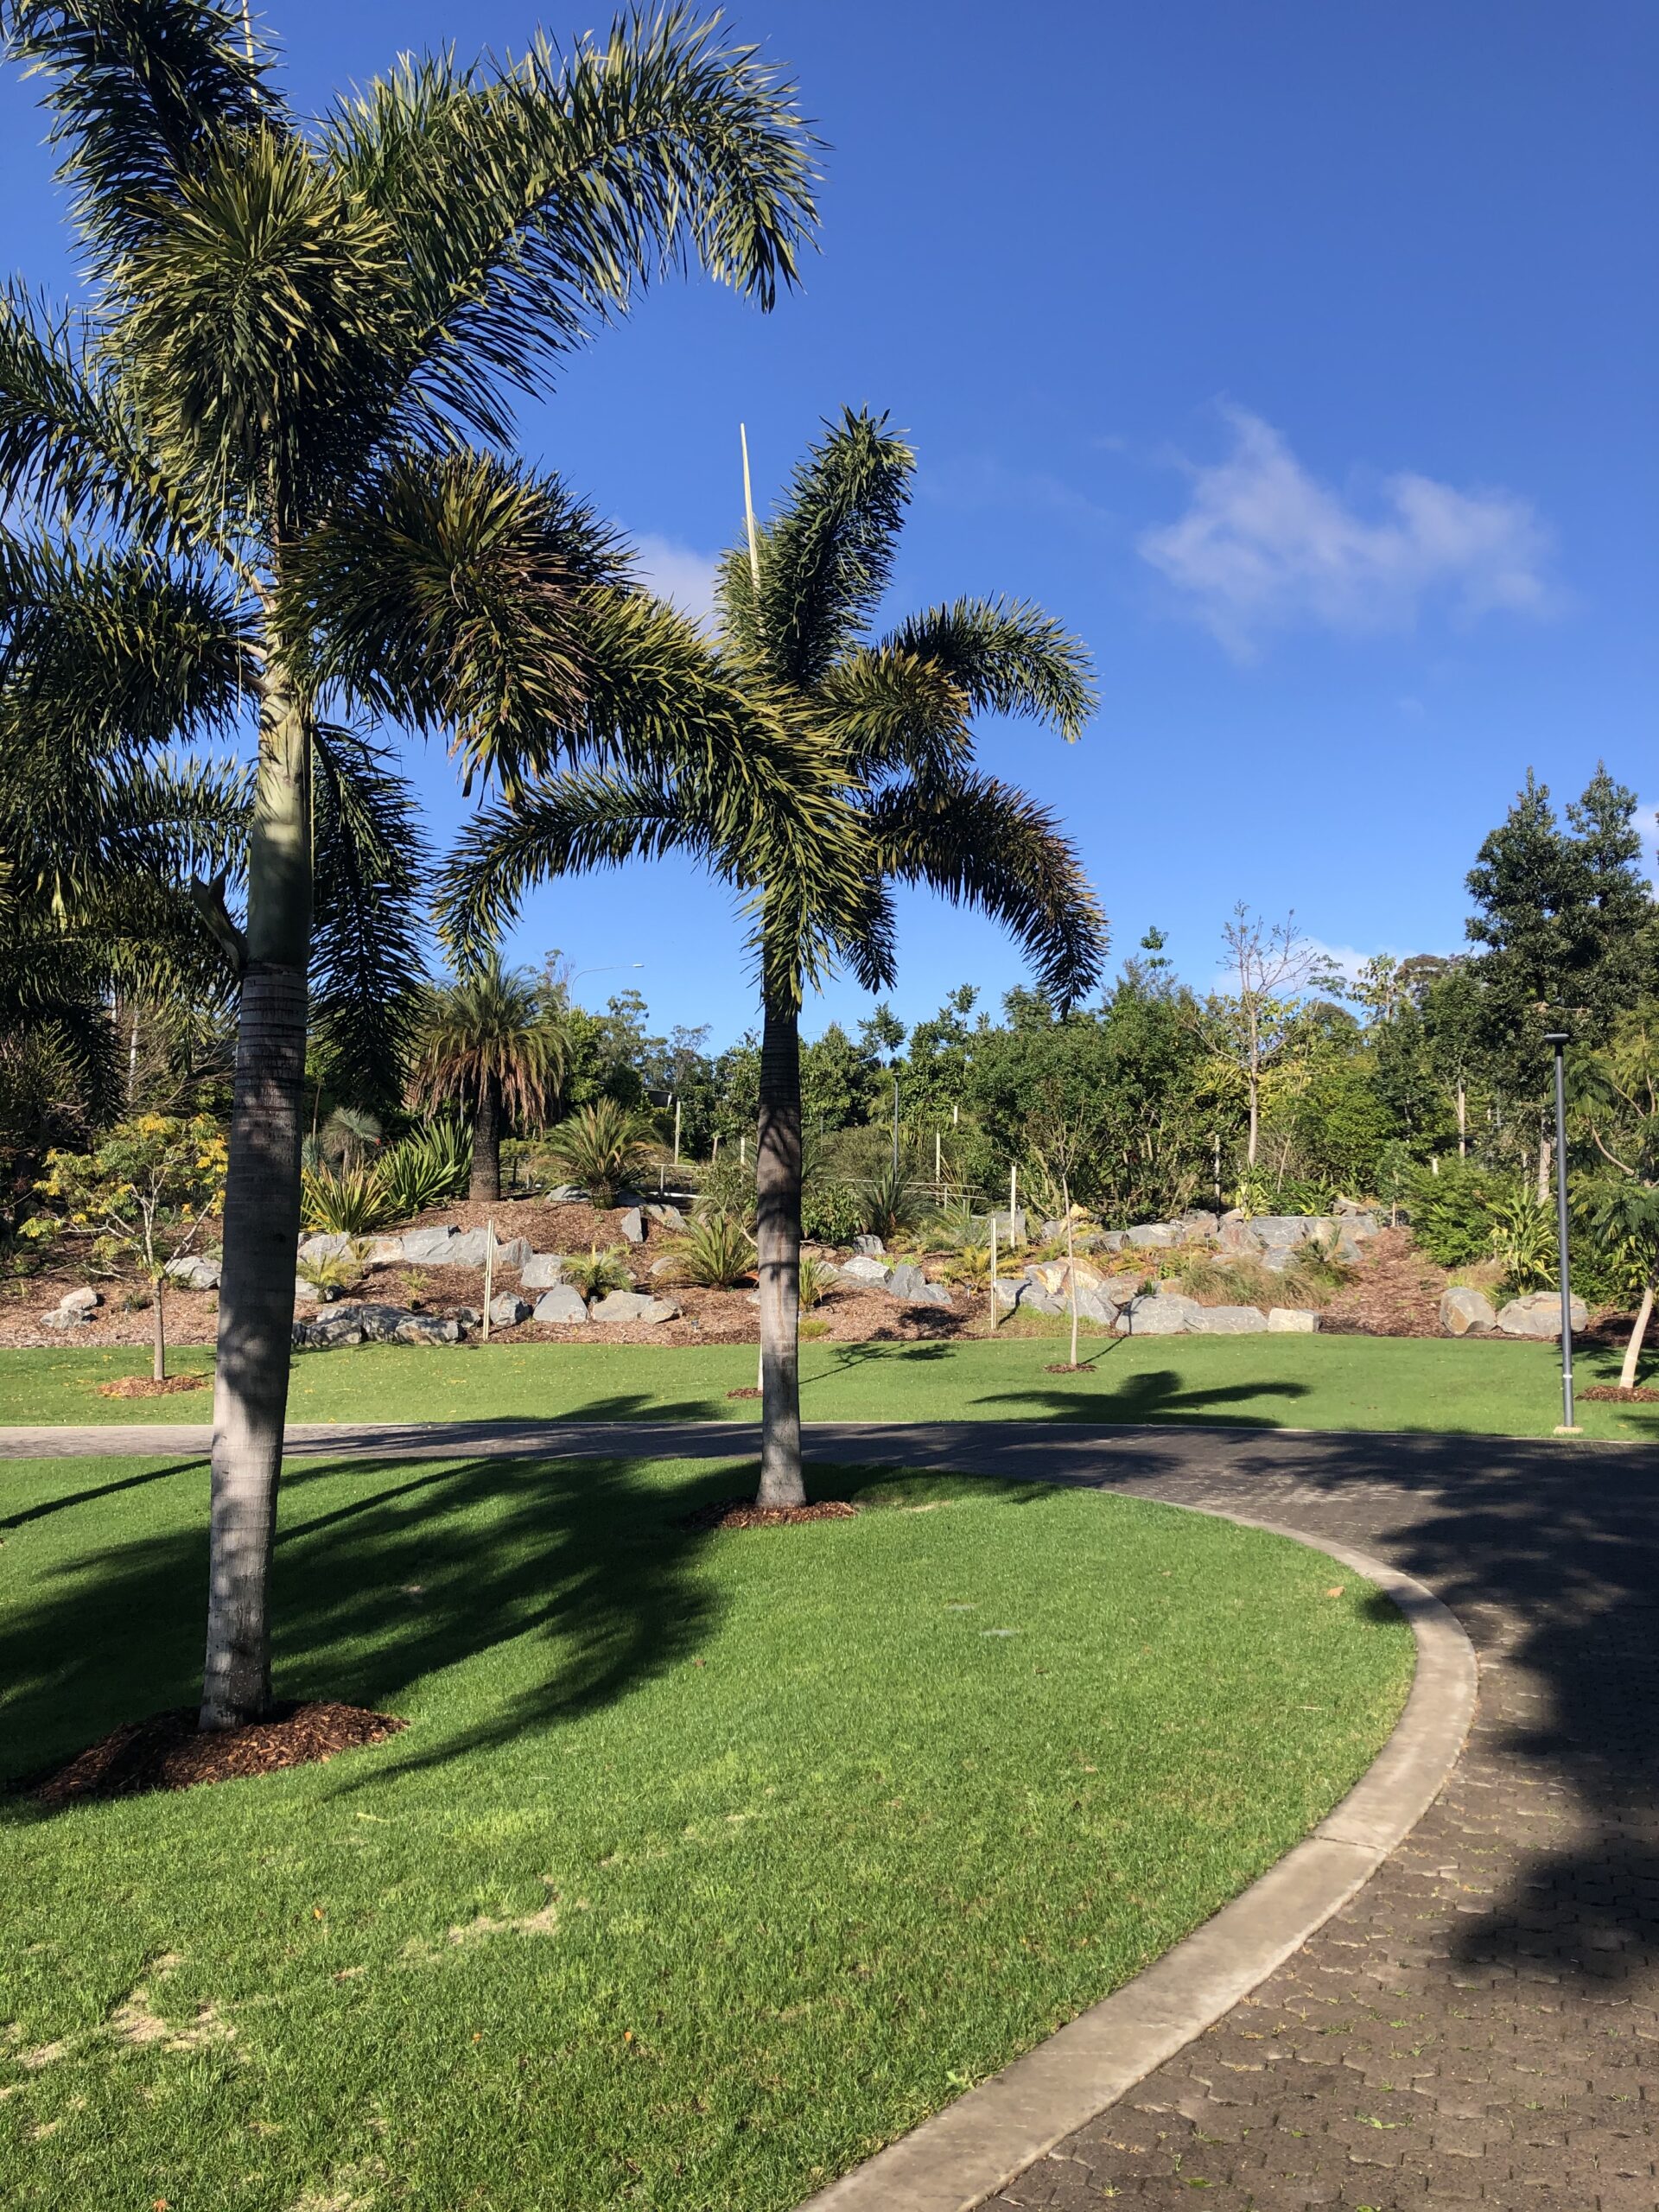 Brisbane Botanic Gardens Mt Coottha